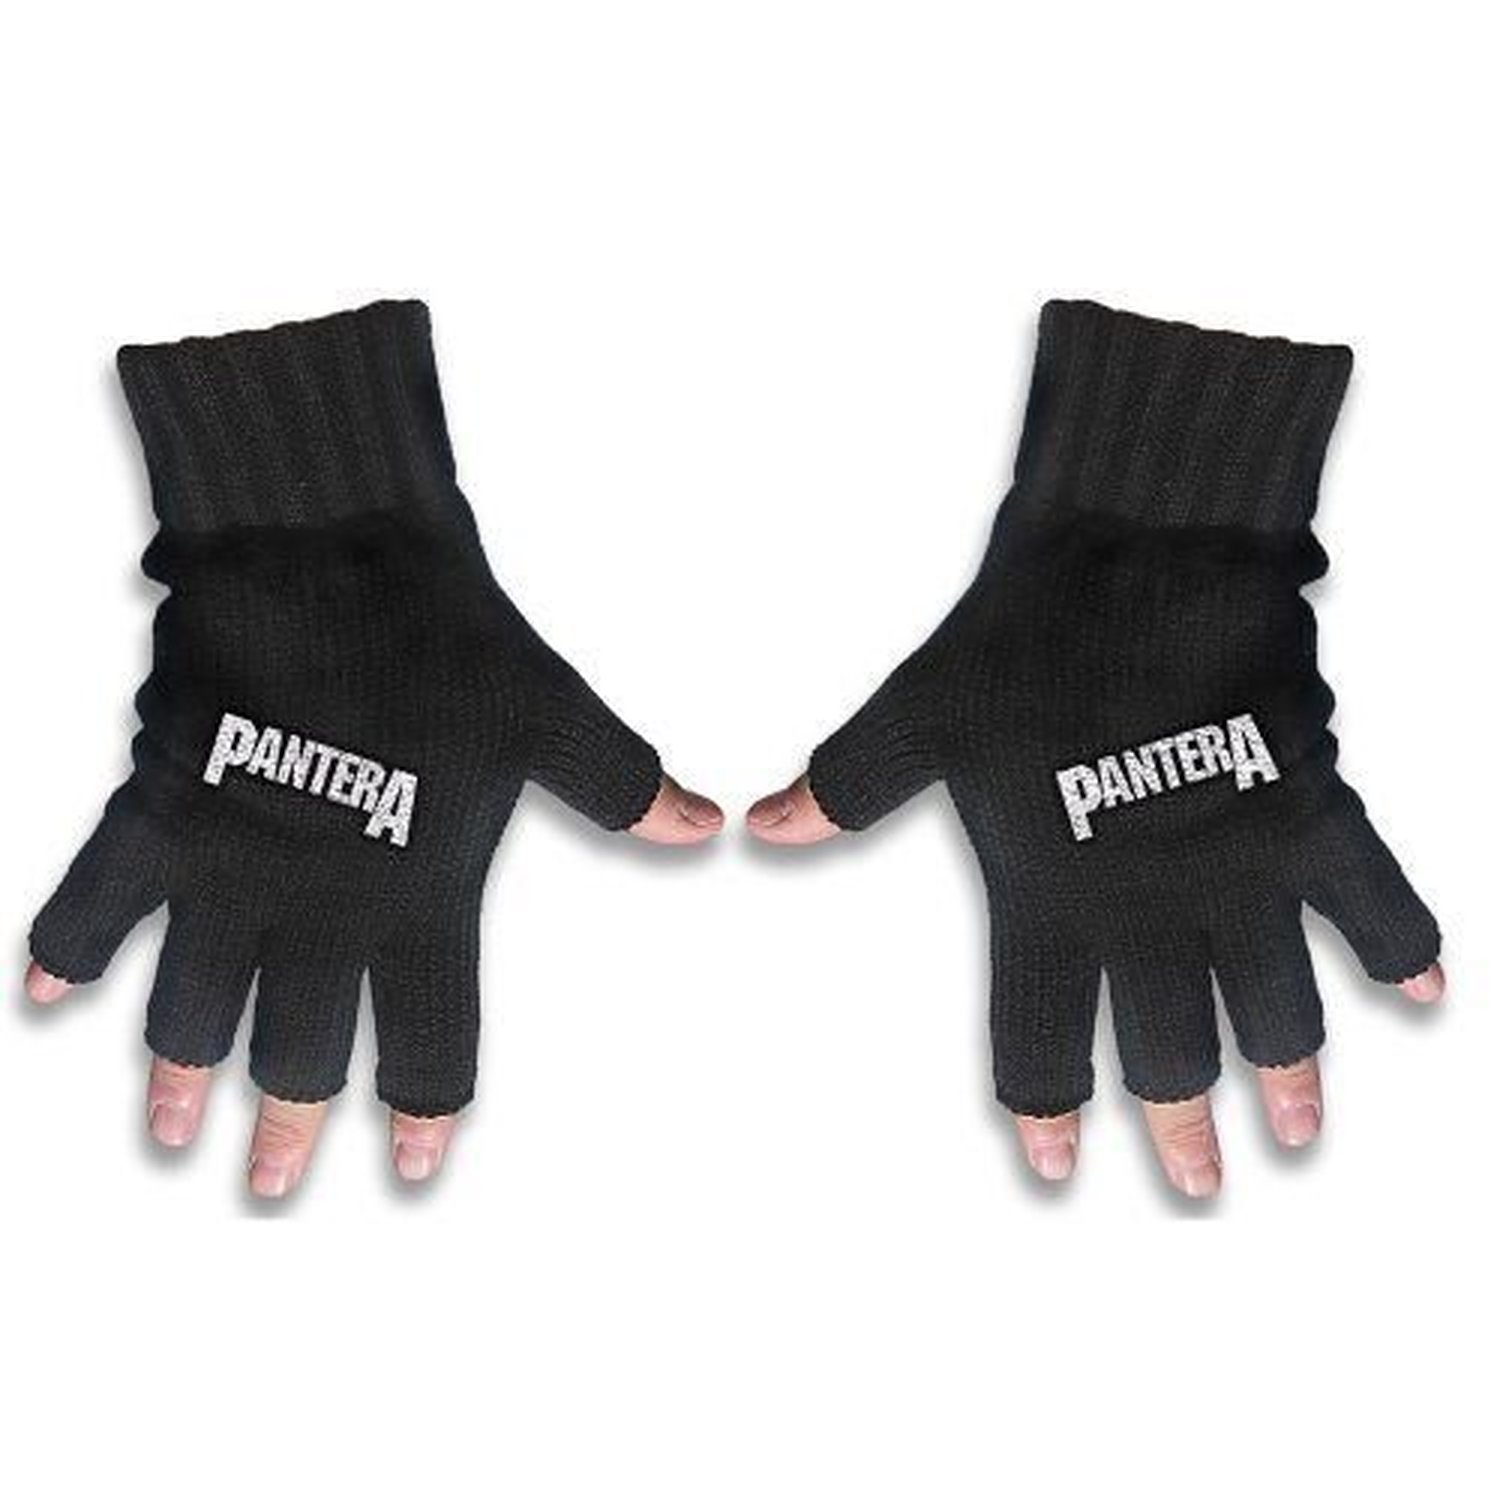 black and white fingerless gloves